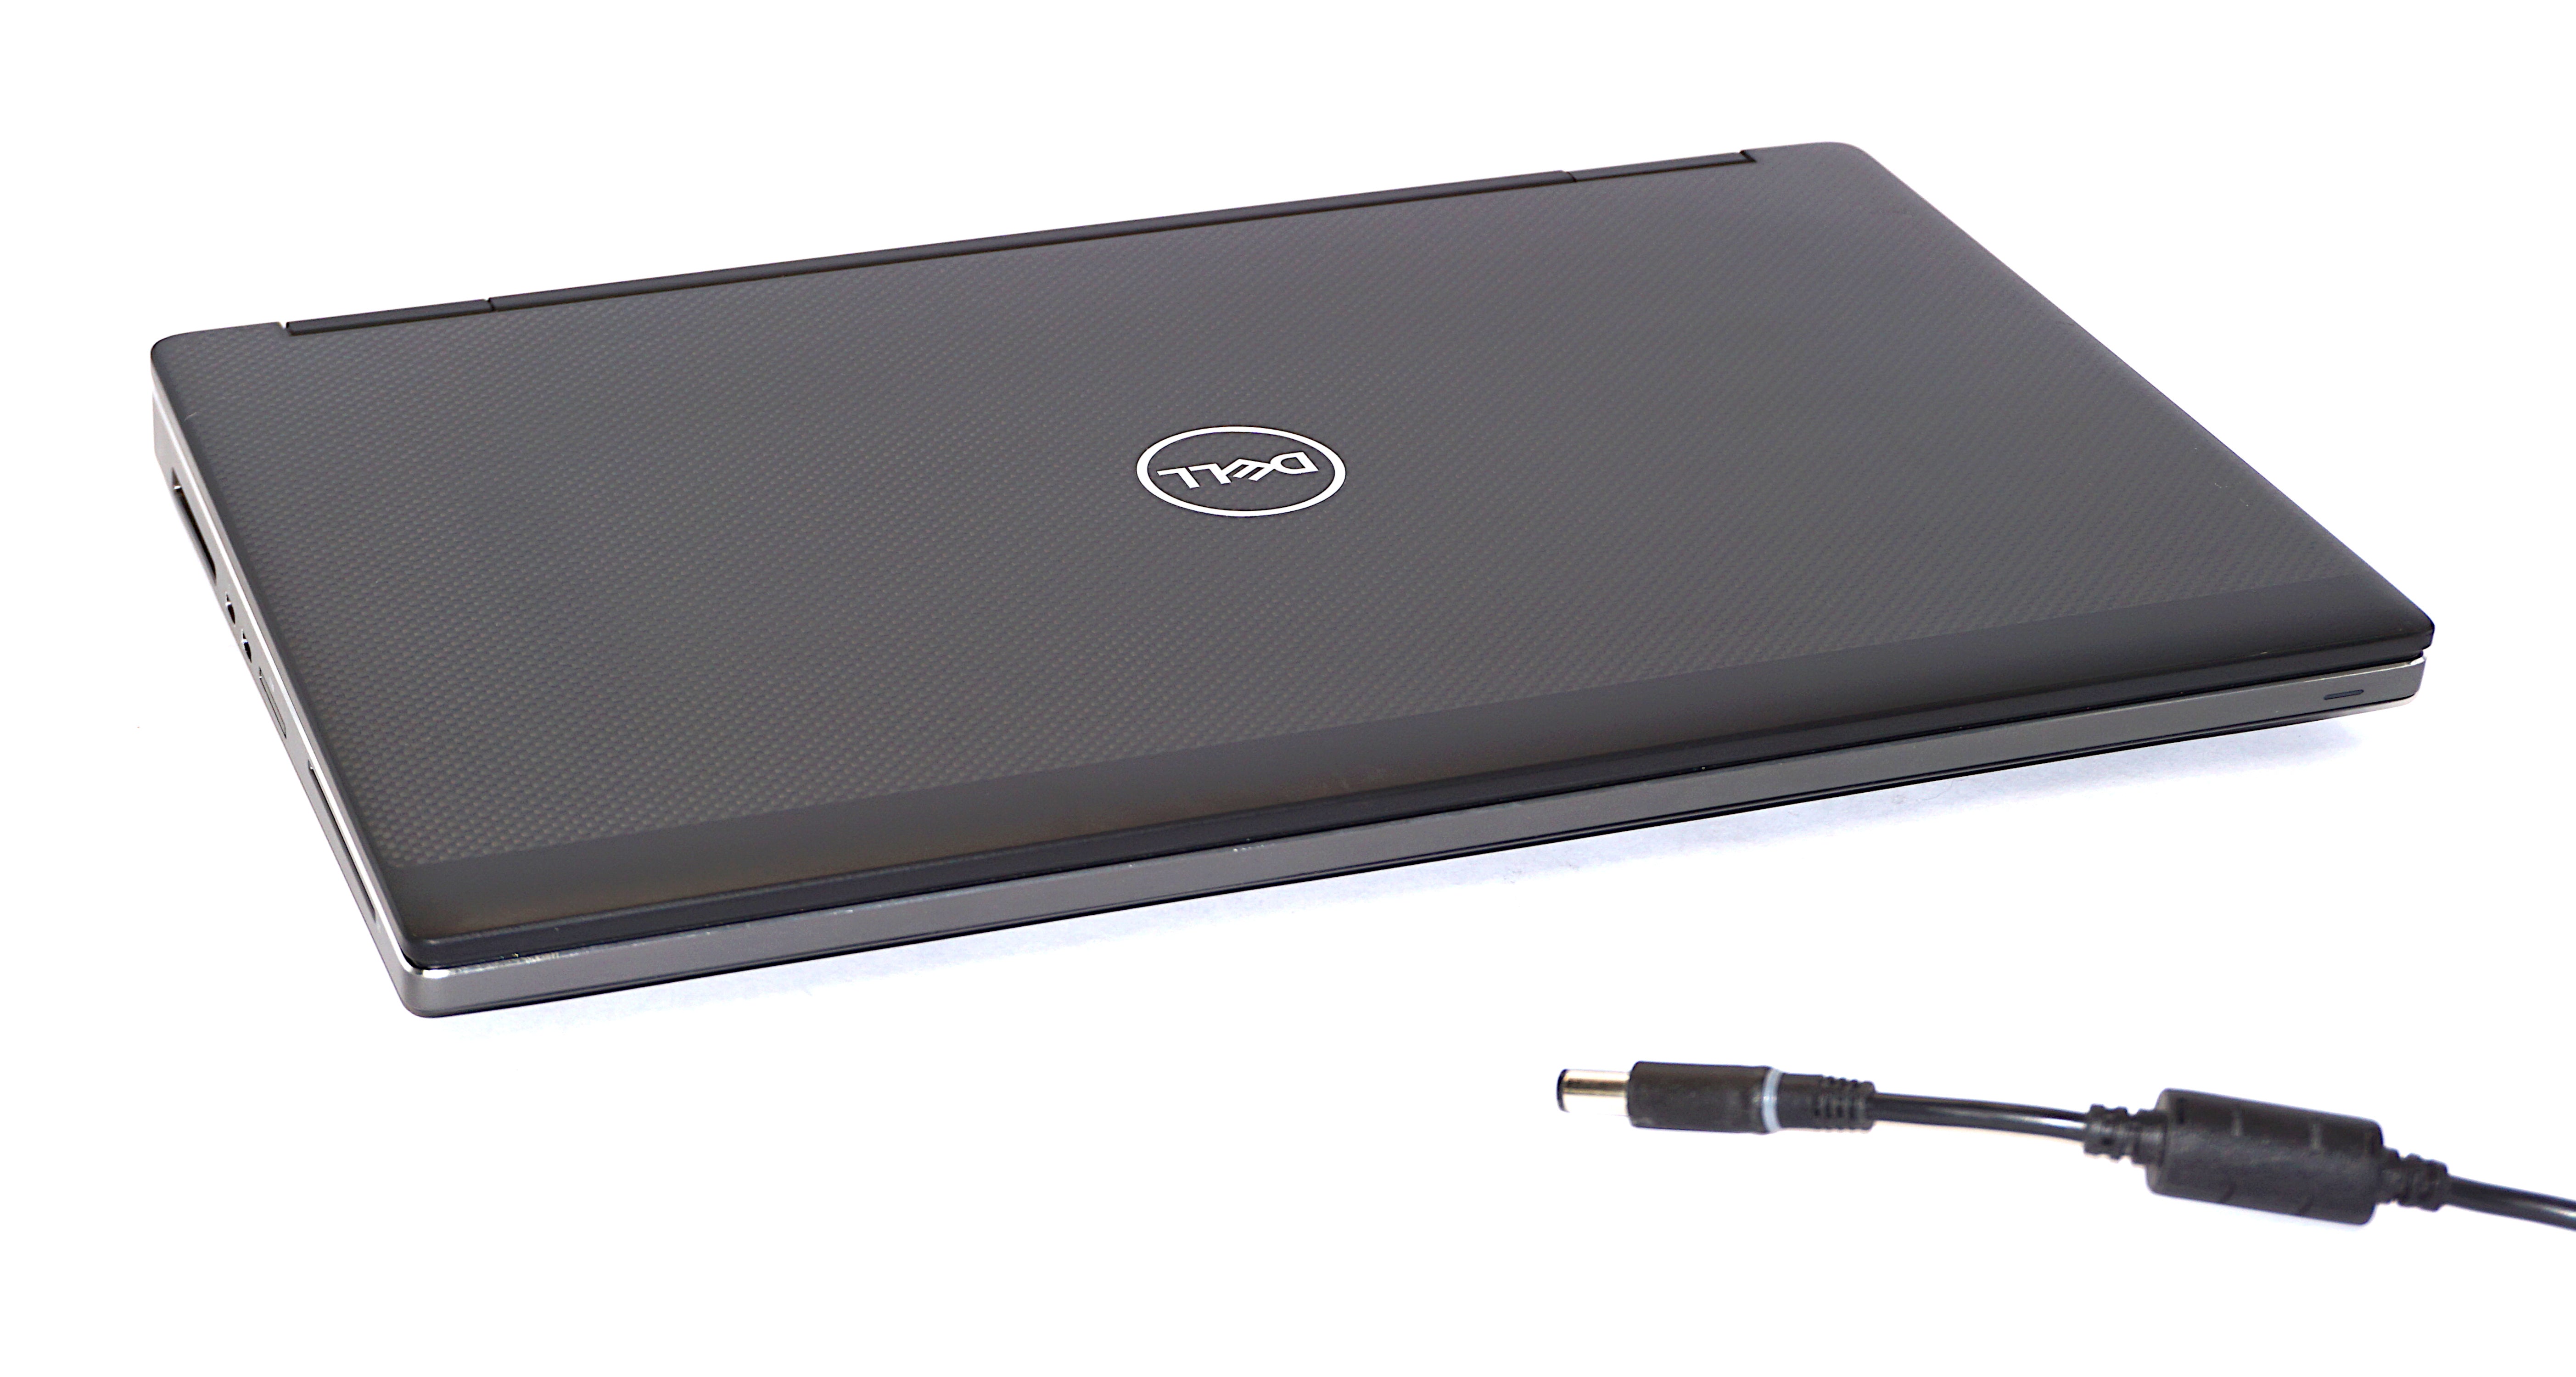 Dell Precision 7530 Laptop, 15.6" i7 8th Gen, 16GB RAM, 512GB SSD